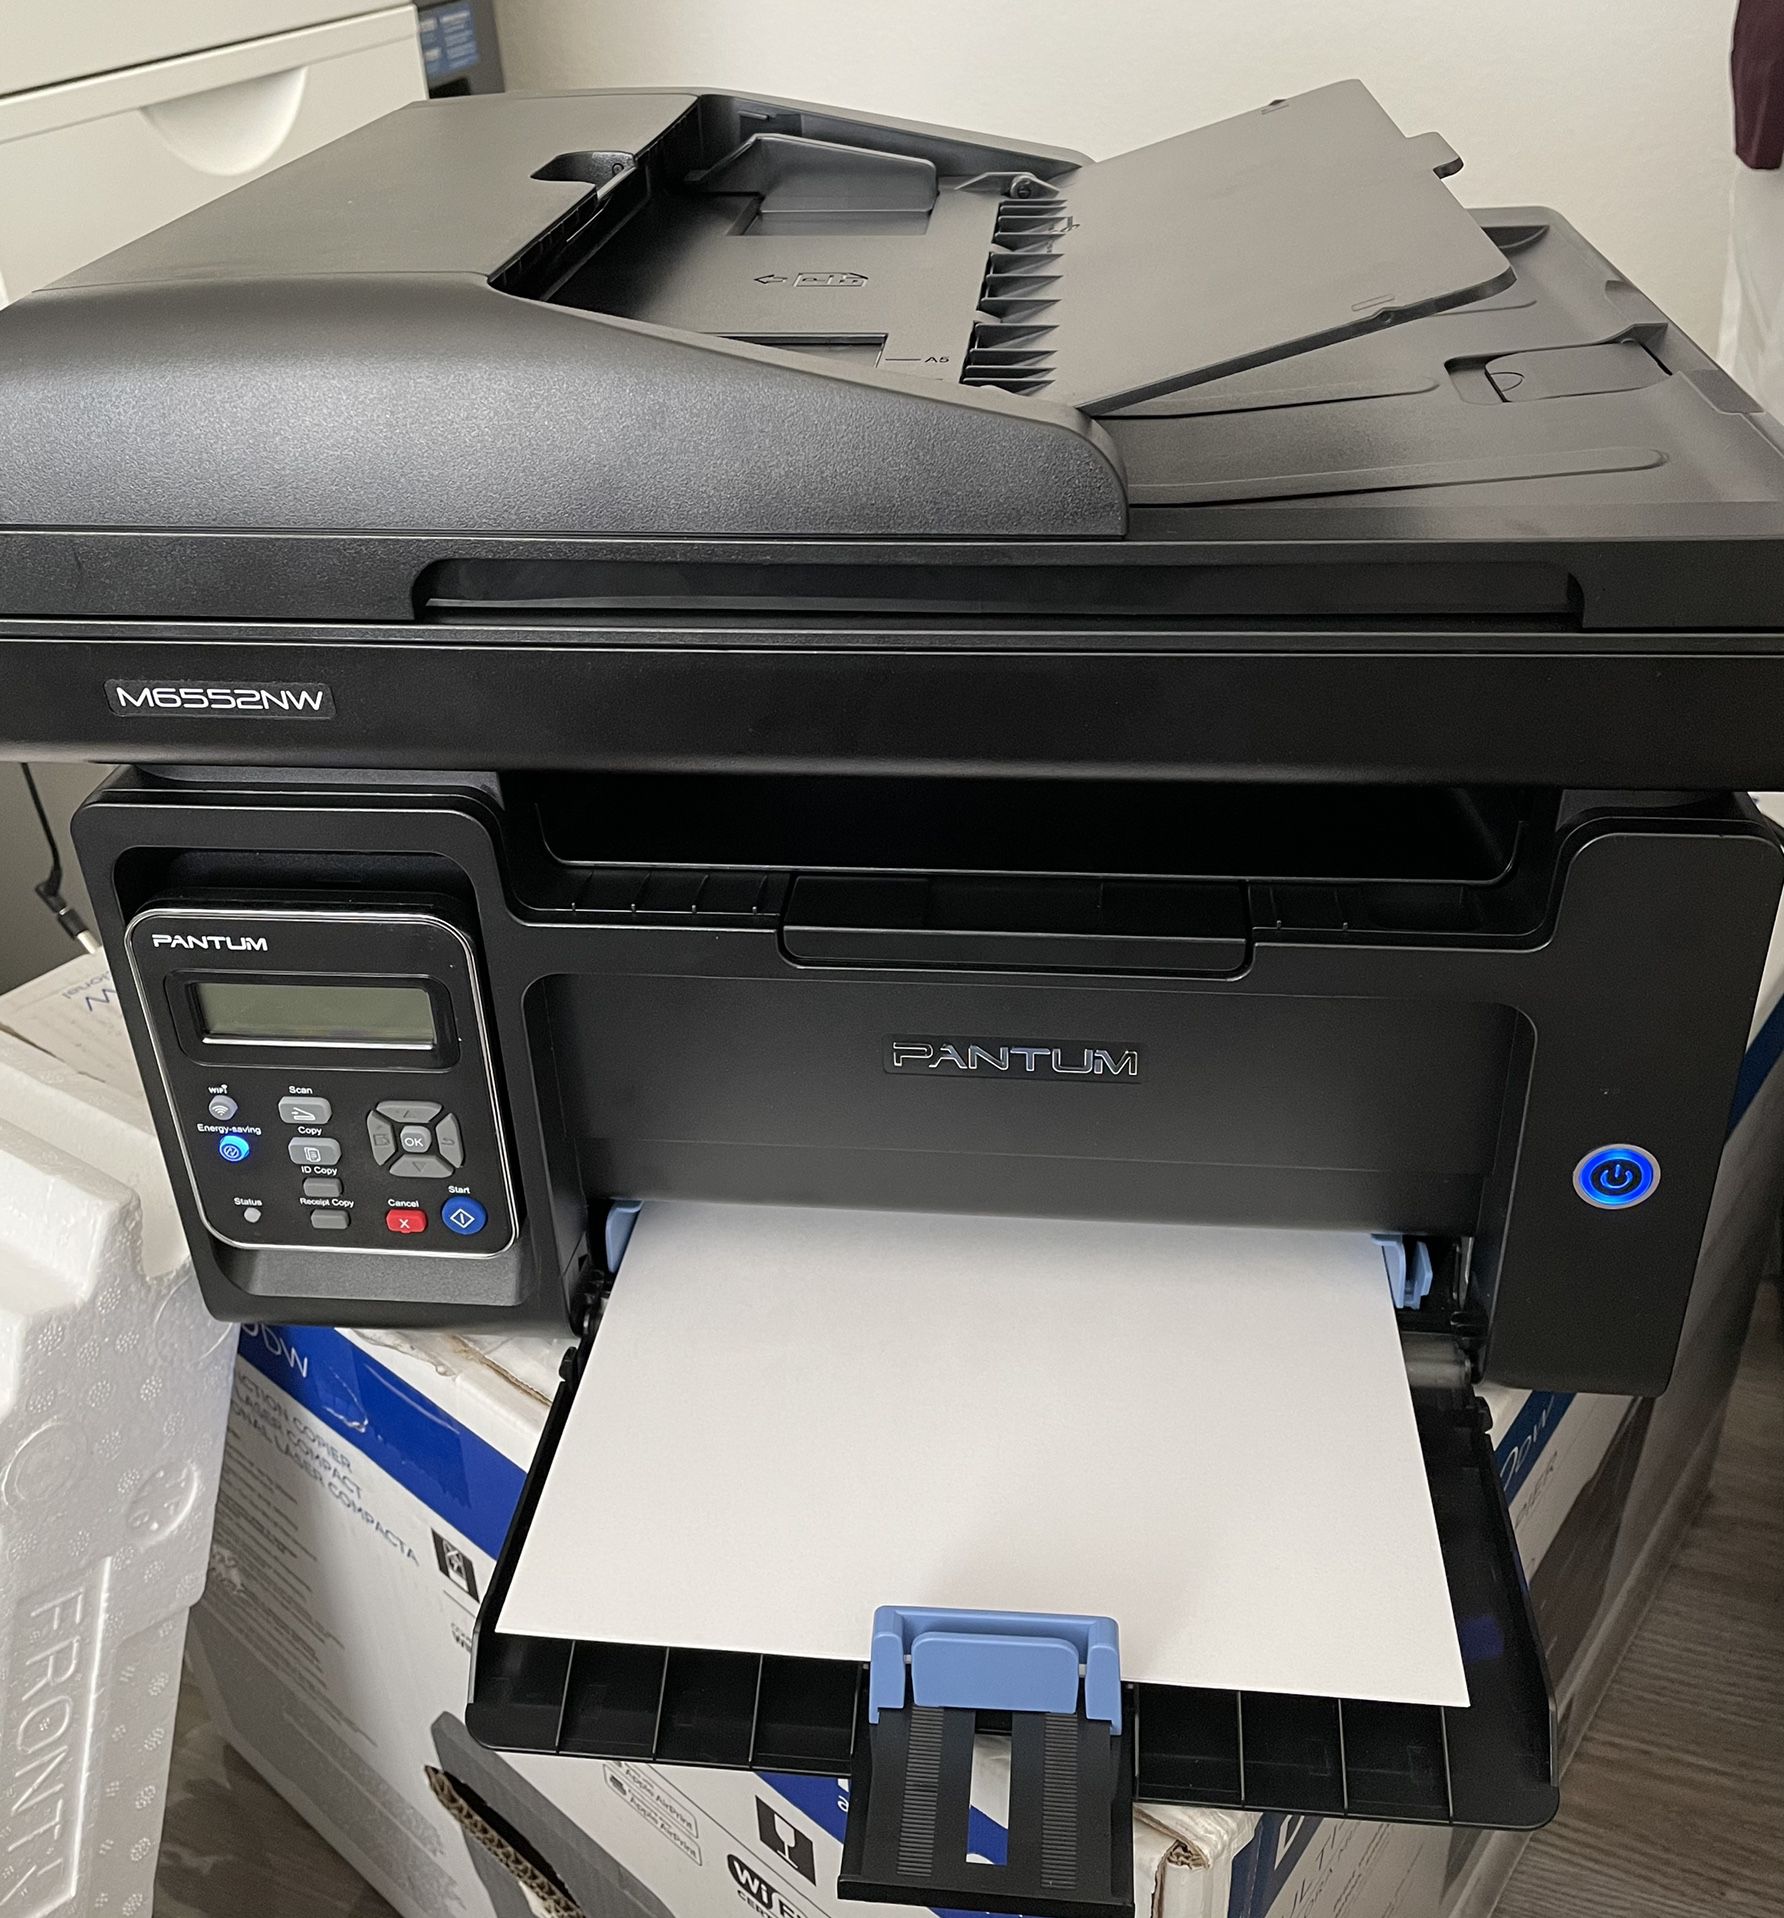 Pantum M6552NW Laser Printer/copier/scanner